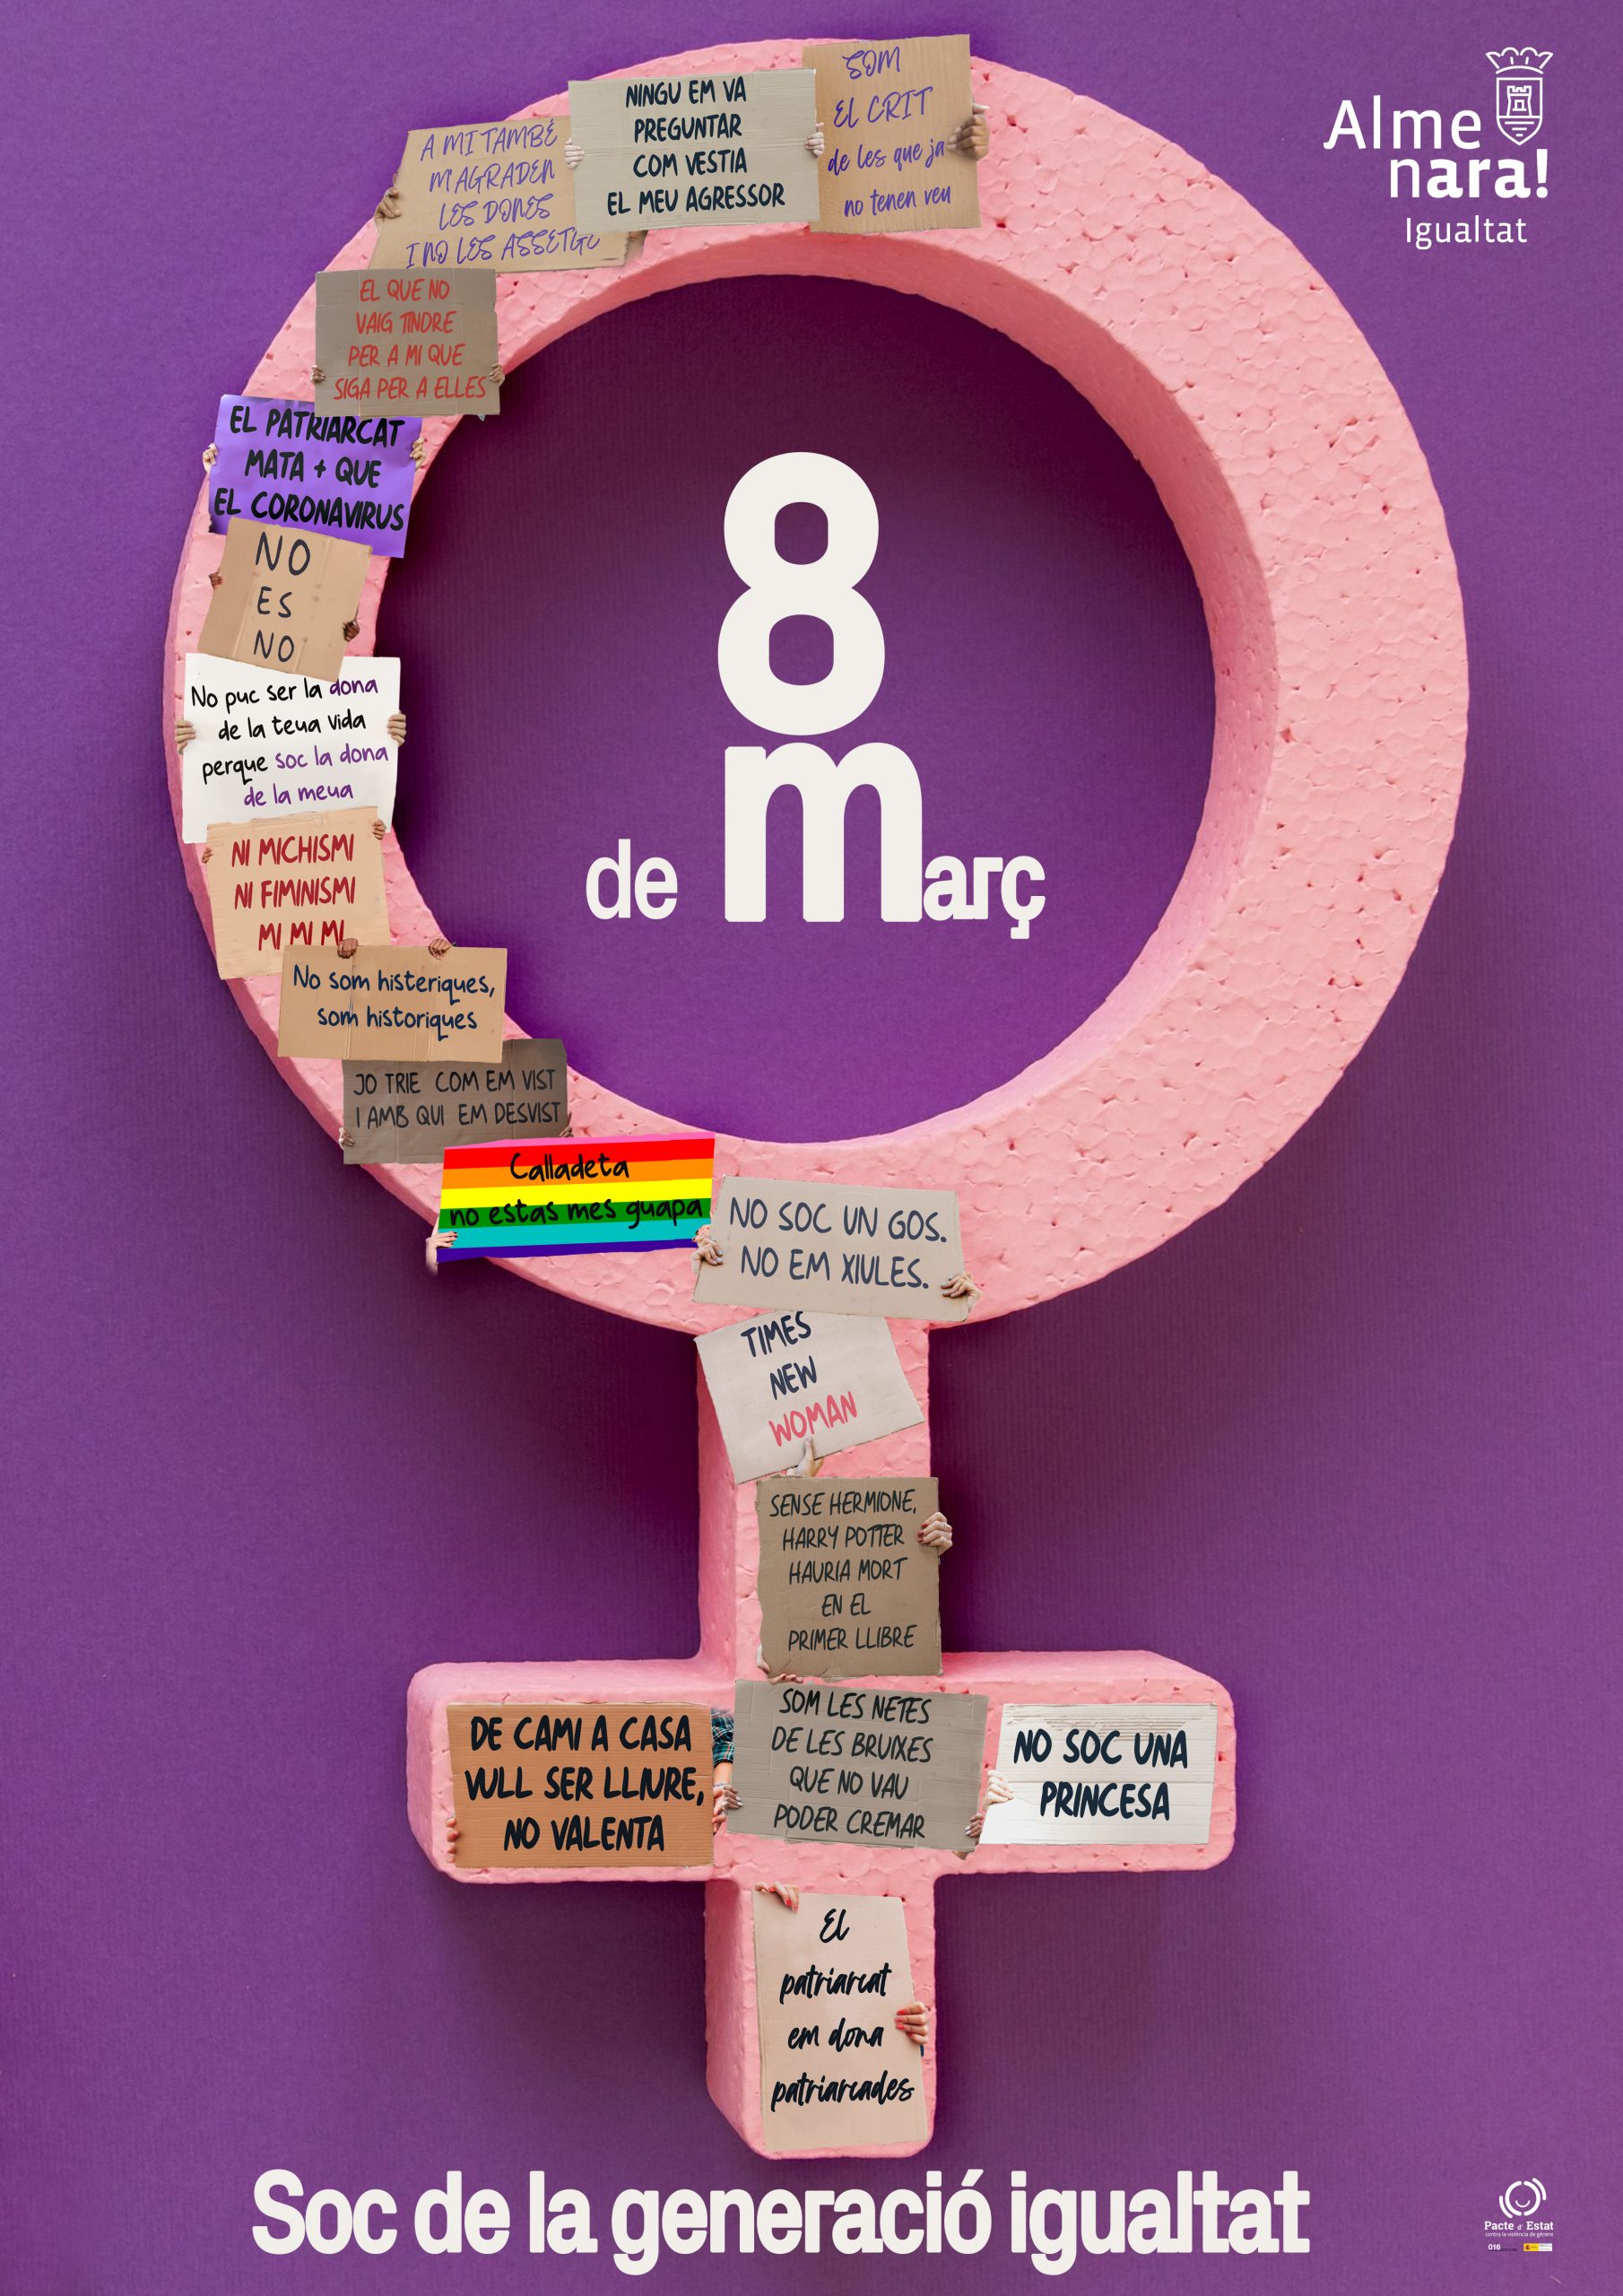 Almenara presenta los actos conmemorativos del 8 de marzo, Dia Internacional de la Dona